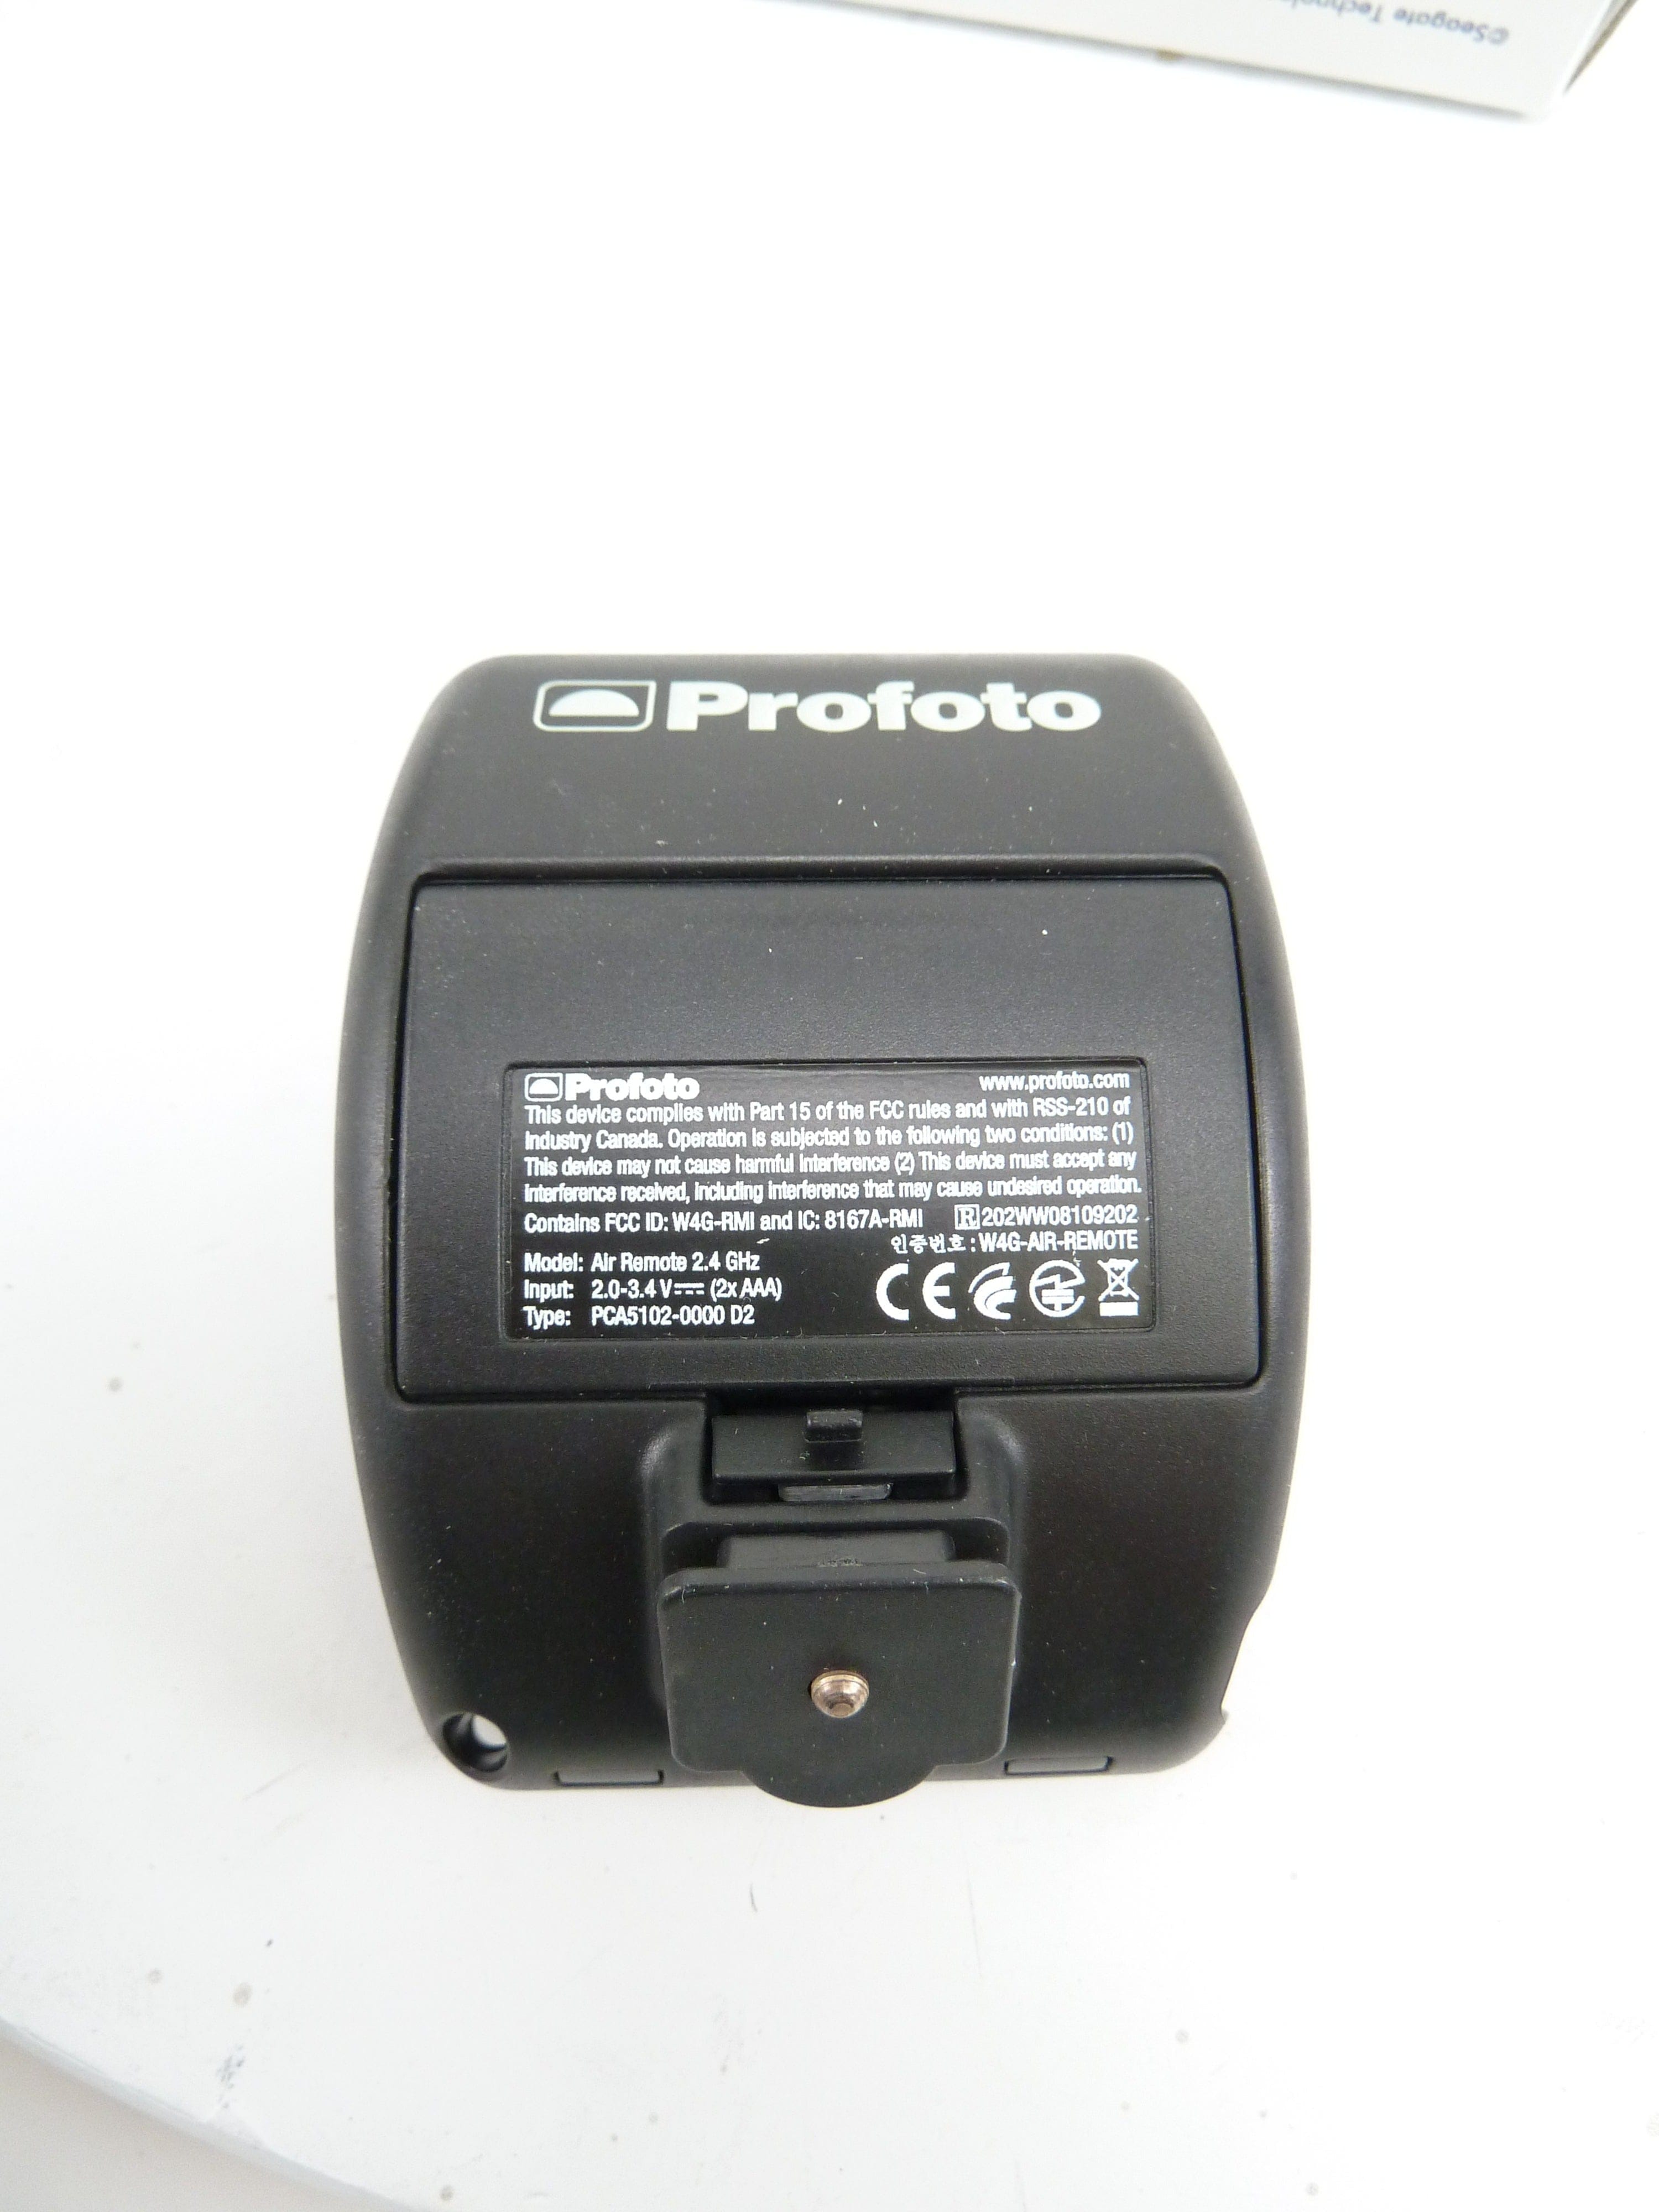 Profoto Air Remote 901031 in Box